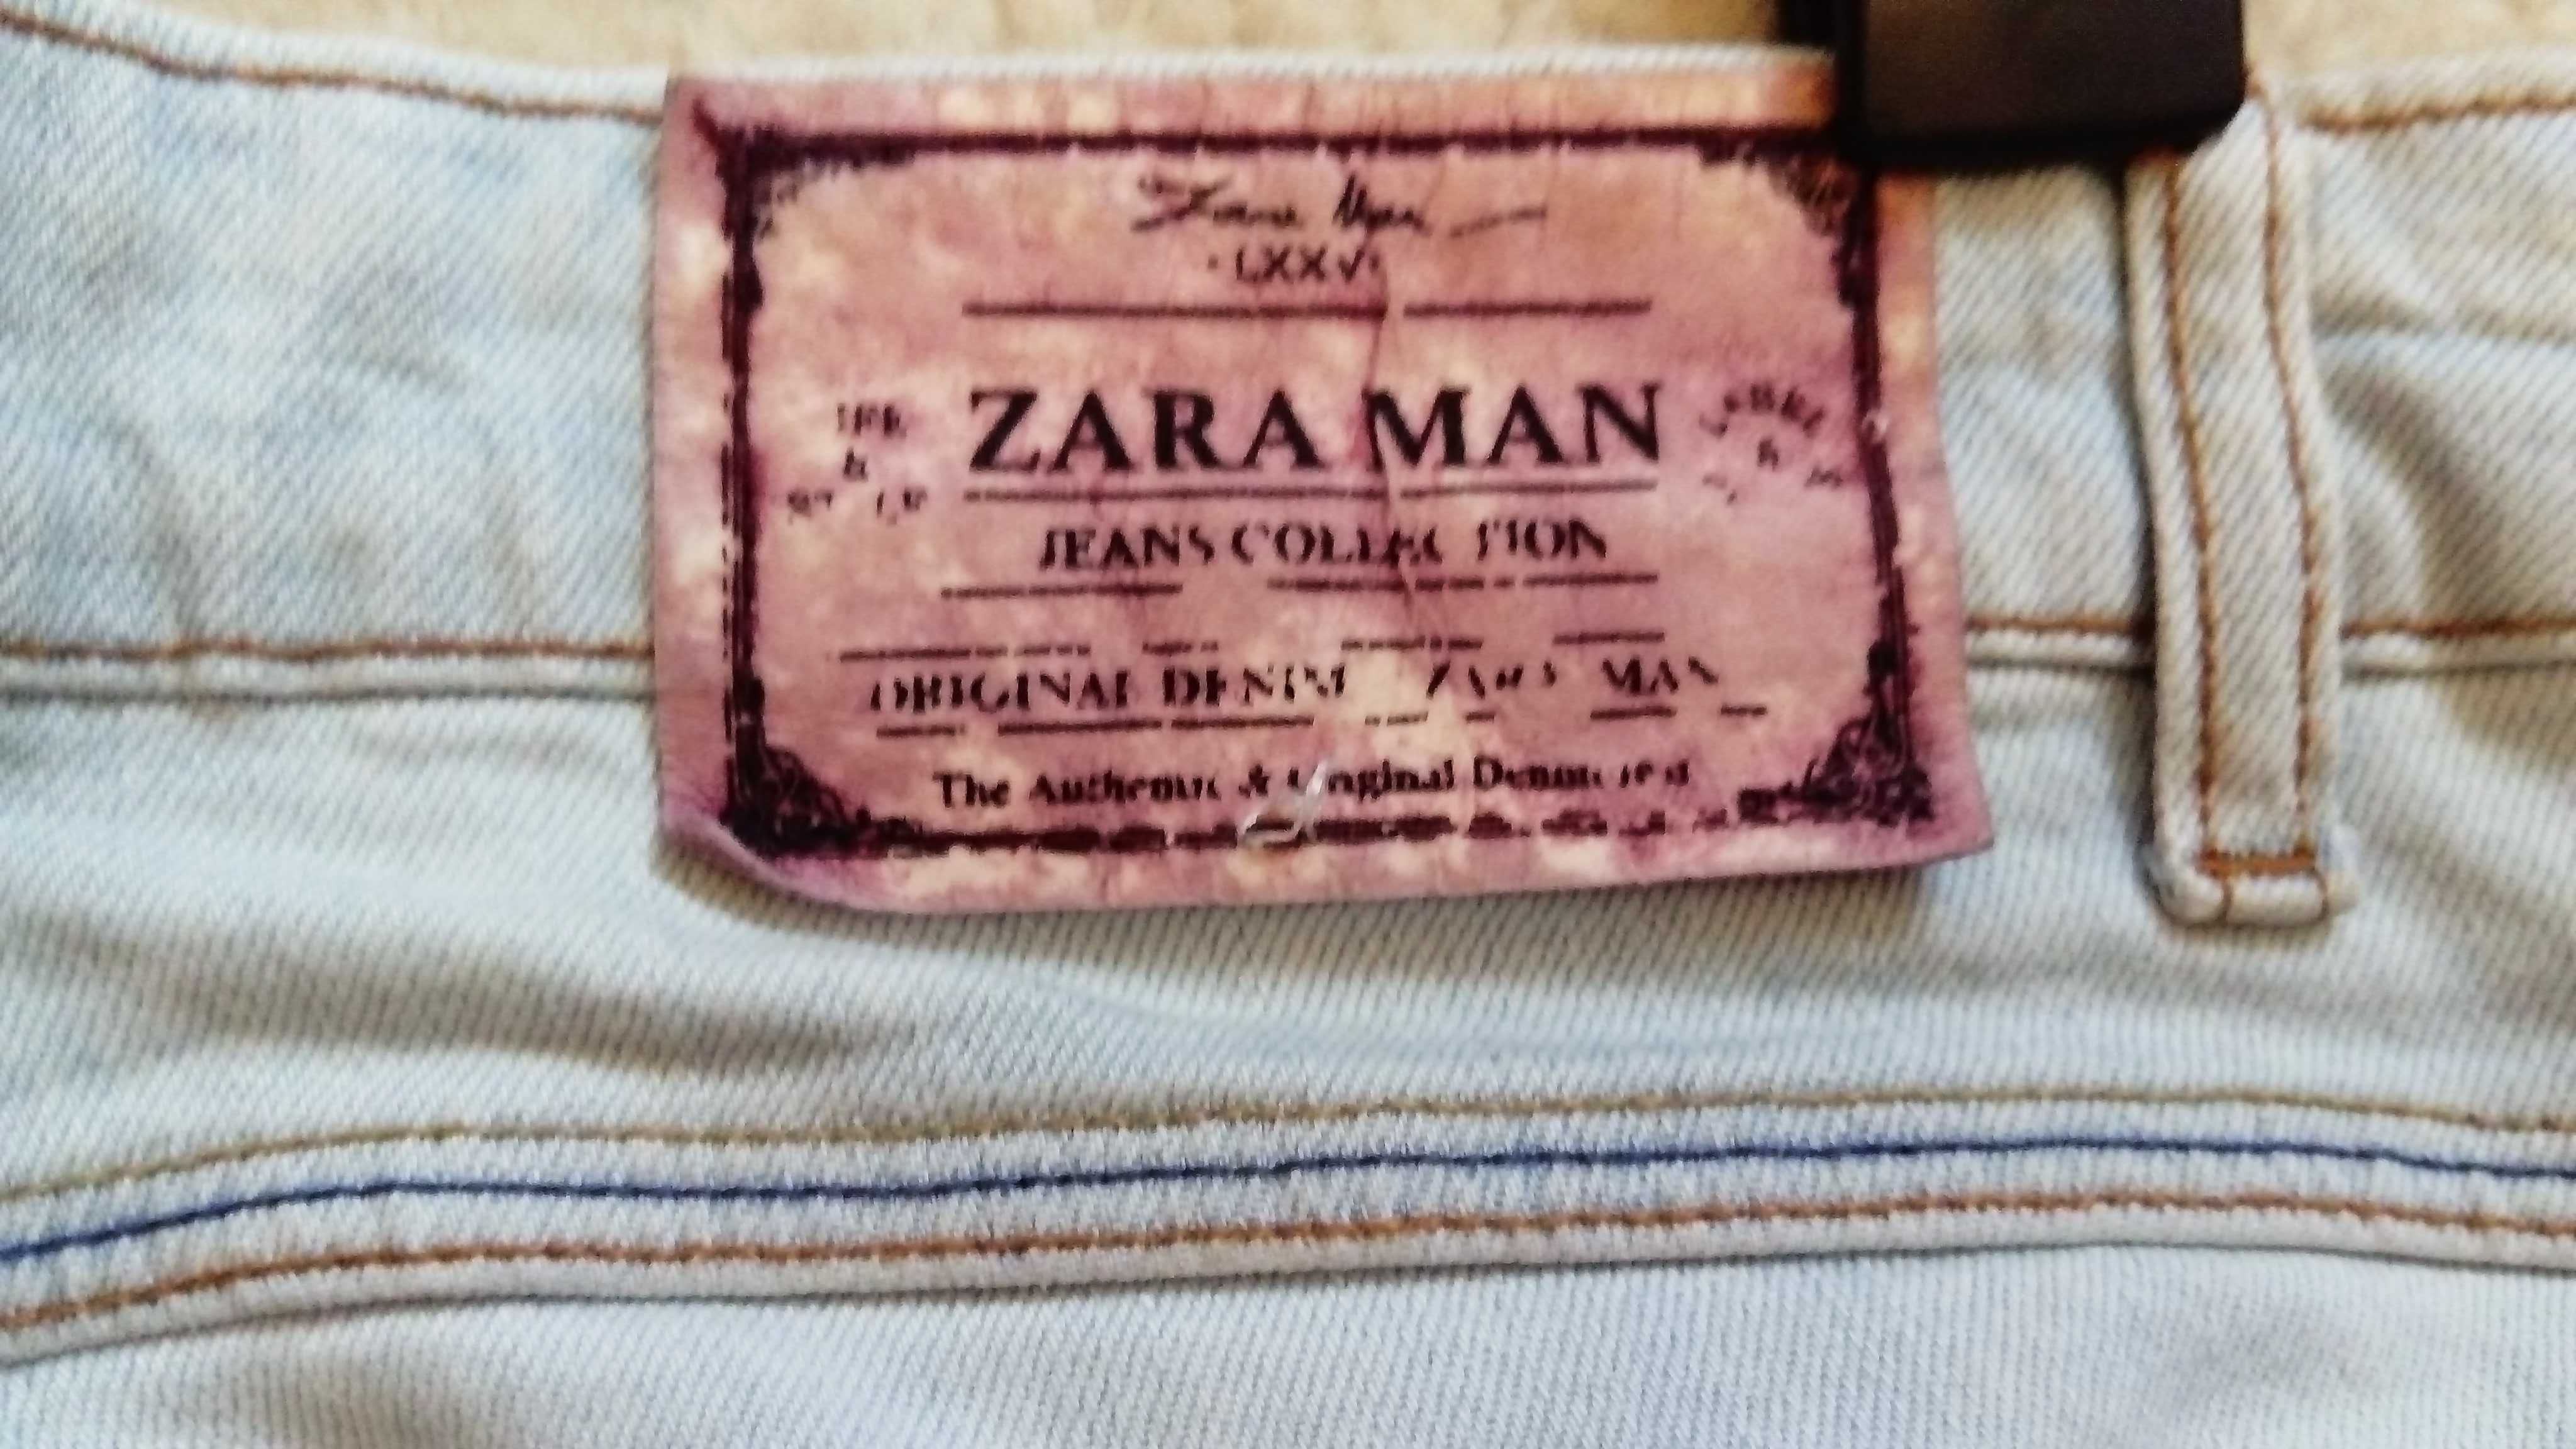 Jasne jeansy Zara Men z dziurami/przetarciami, rozmiar europejski 42